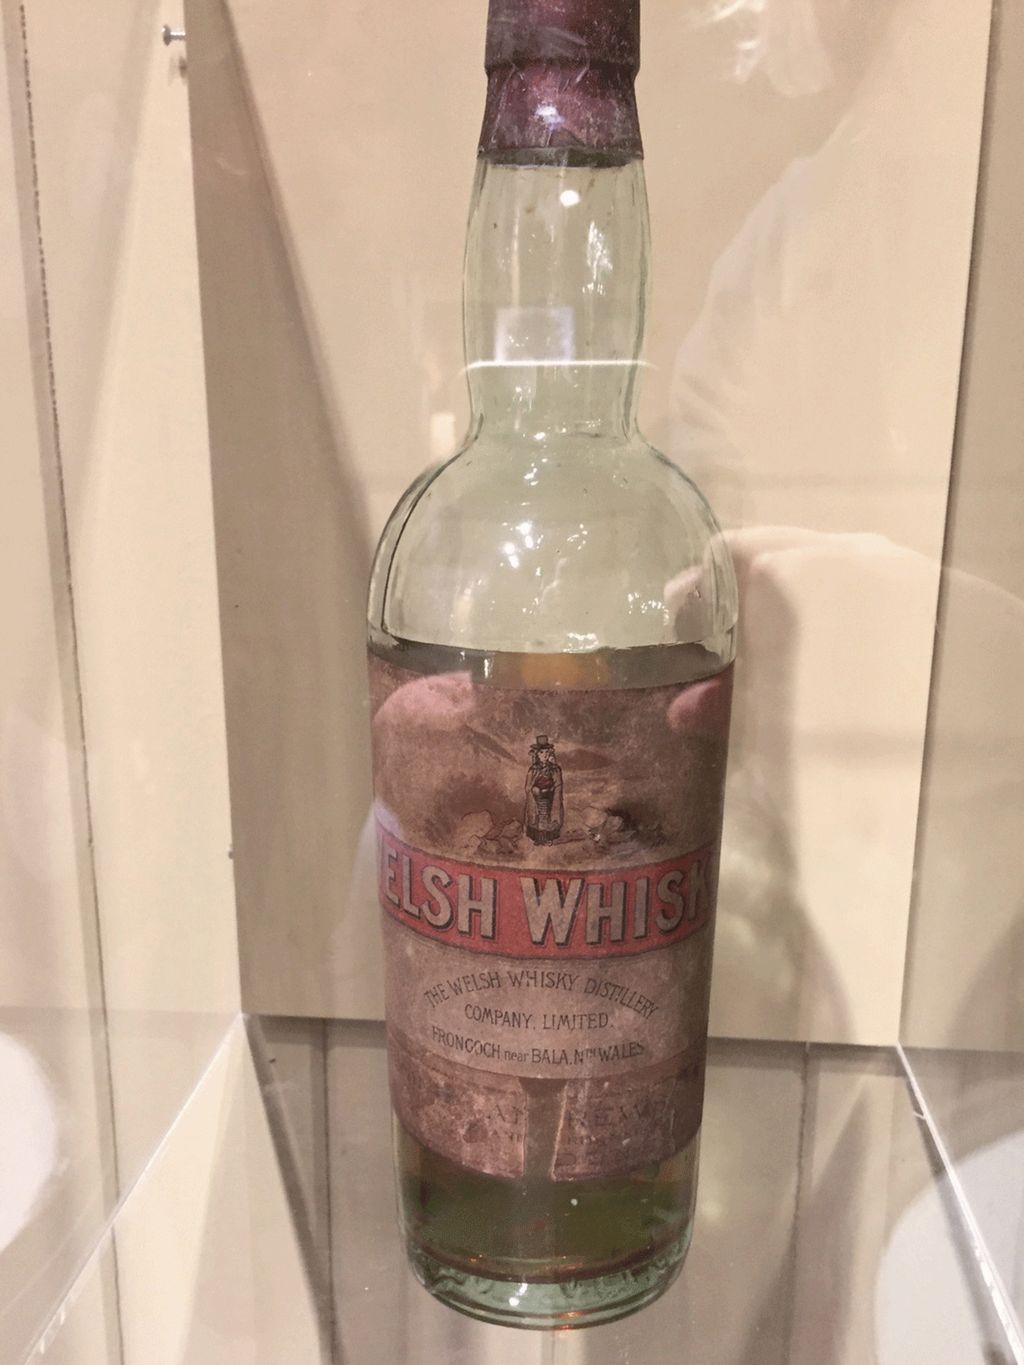 Old Welsh Whisky bottle